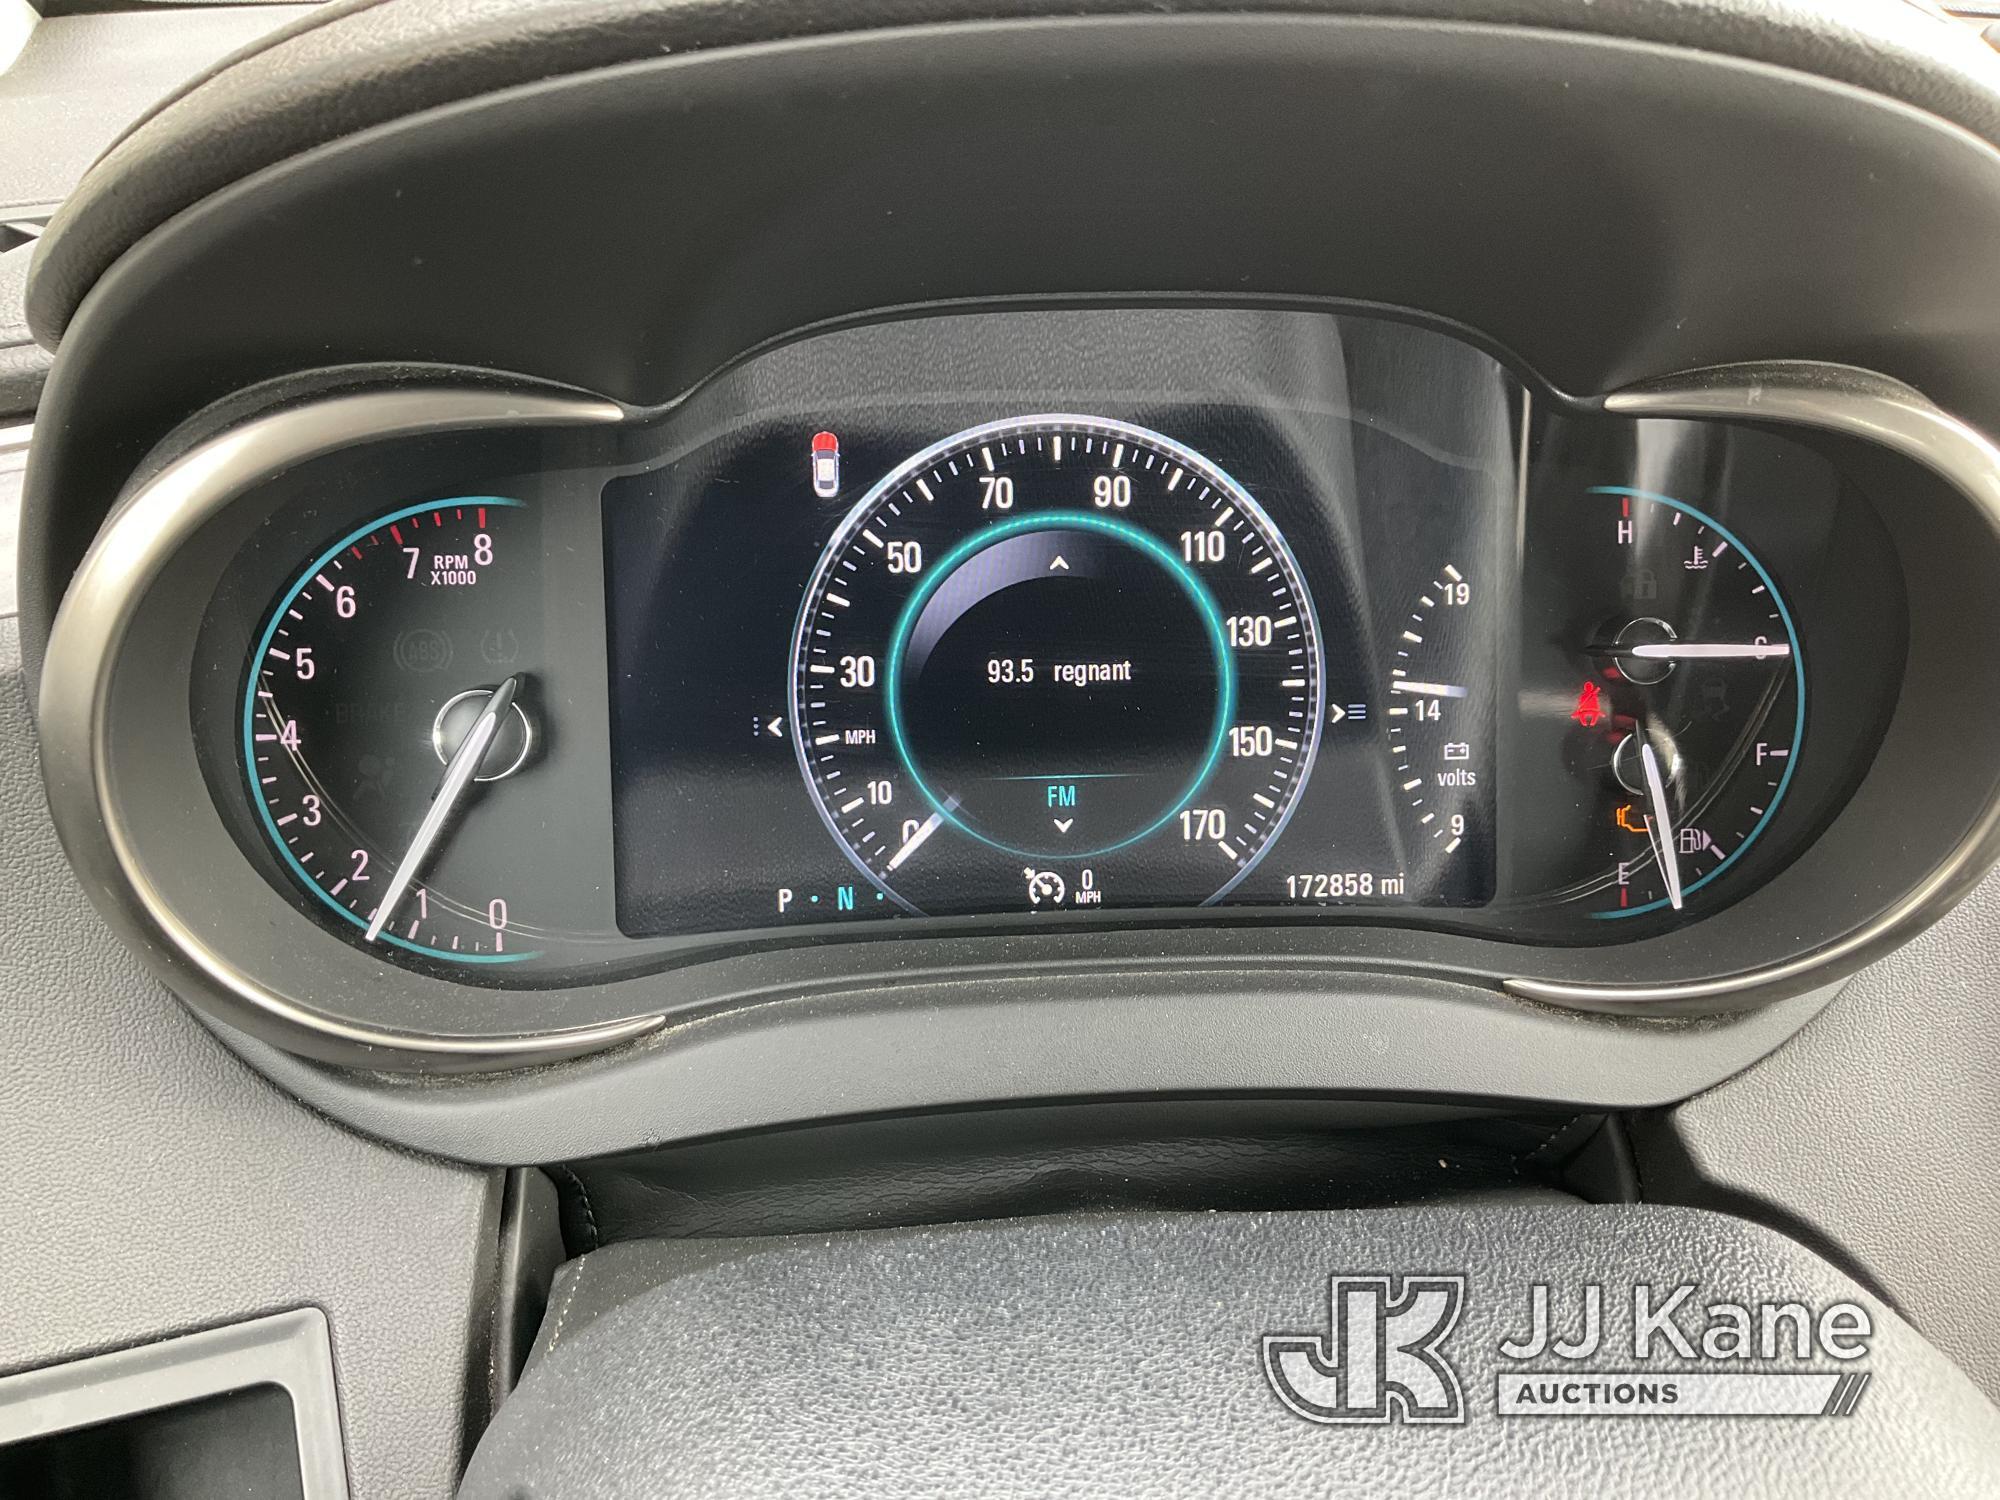 (Jurupa Valley, CA) 2016 Buick LaCrosse 4-Door Sedan Runs & Moves, Has Check Engine Light